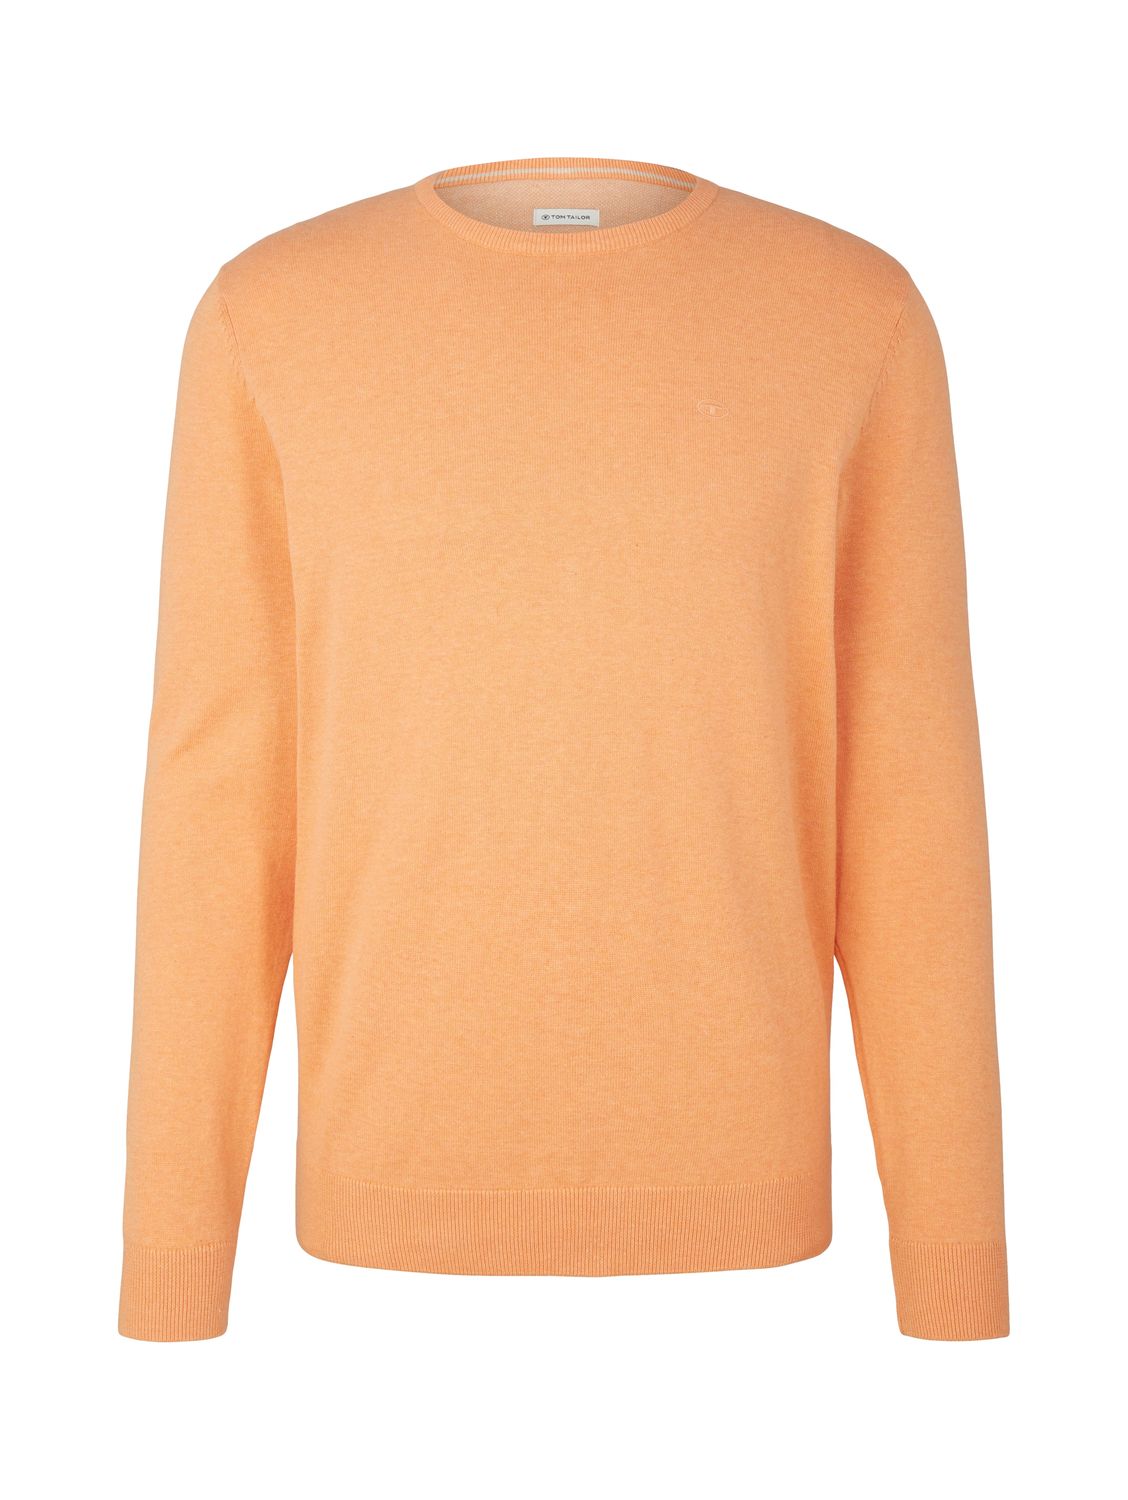 Пуловер Tom Tailor BASIC CREW NECK, оранжевый цена и фото